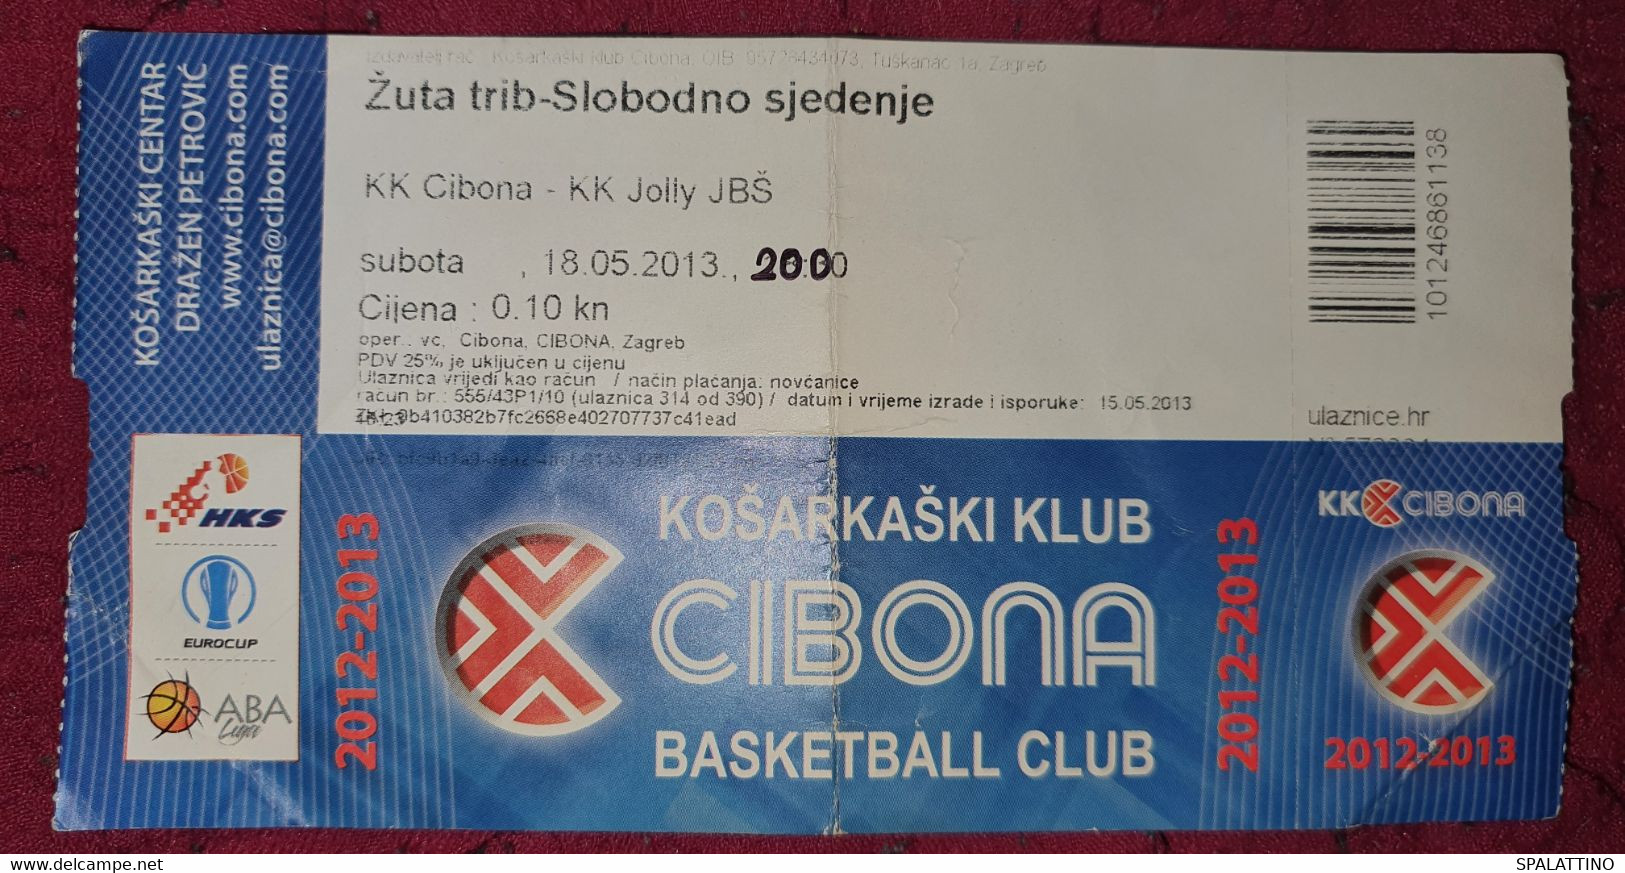 KK CIBONA ZAGREB - KK JOLLY JBŠ, ABA LEAGUE 2012/2013, MATCH TICKET - Apparel, Souvenirs & Other